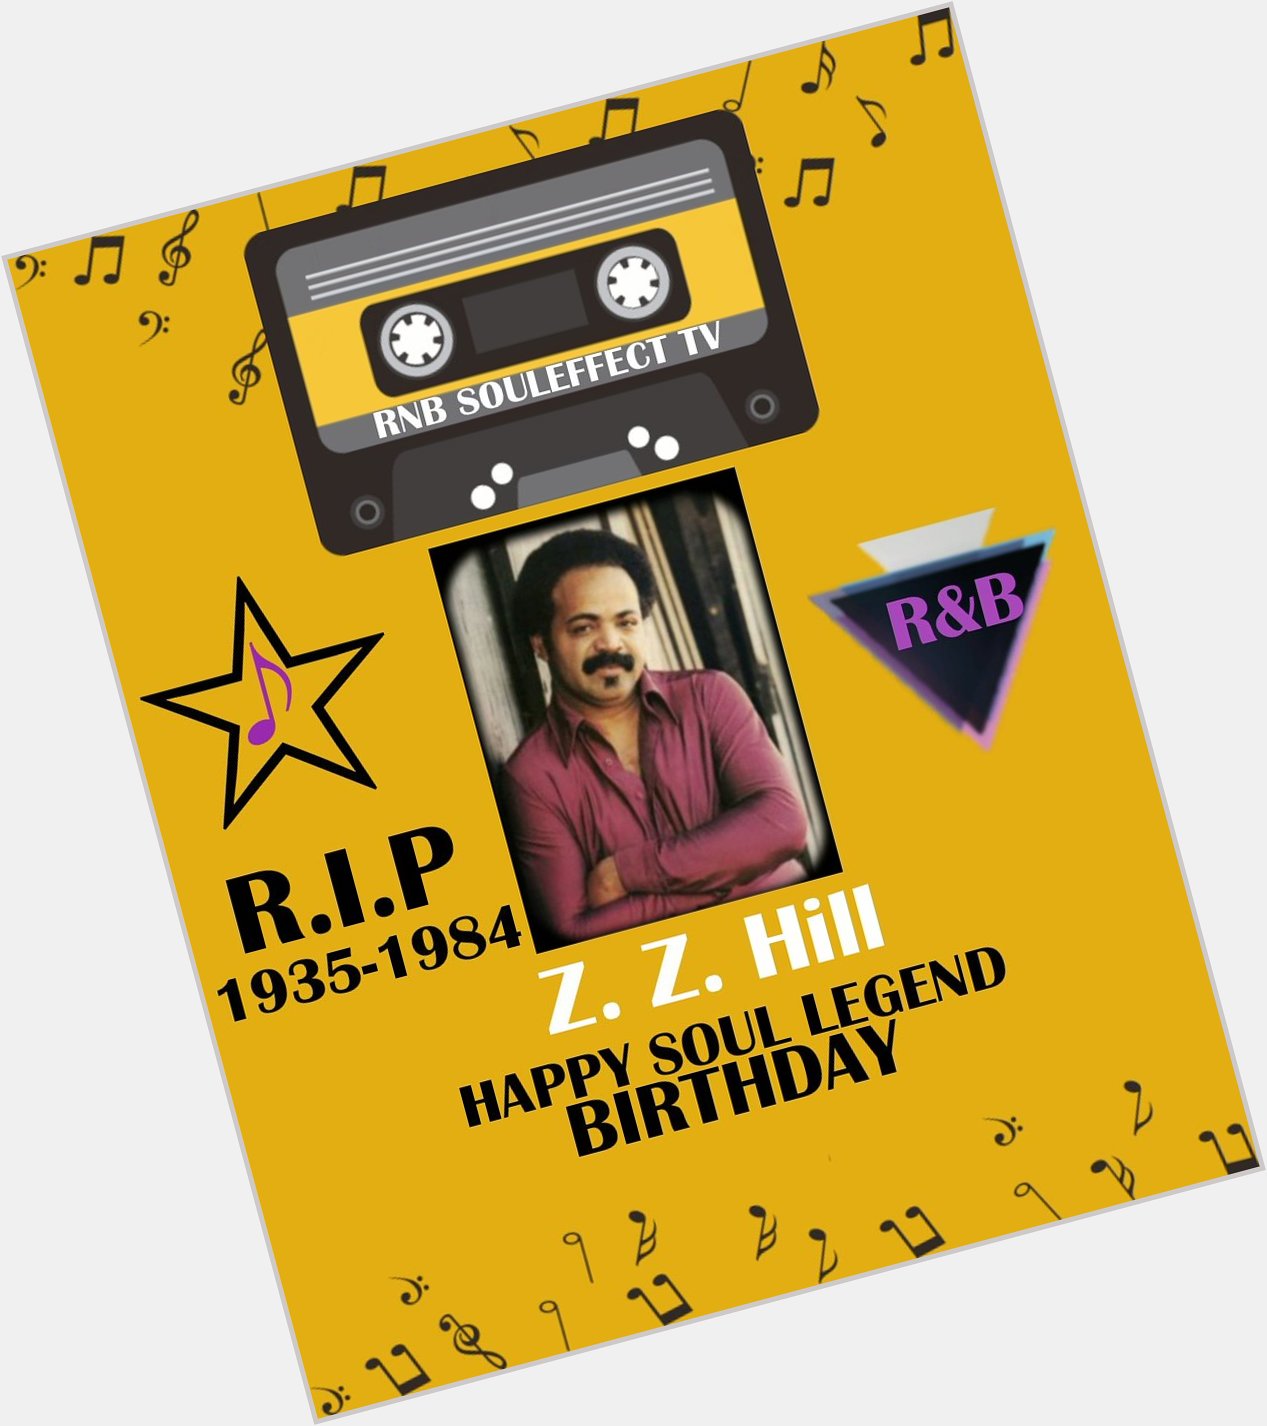 Happy Soul Legend Birthday Z. Z. Hill   